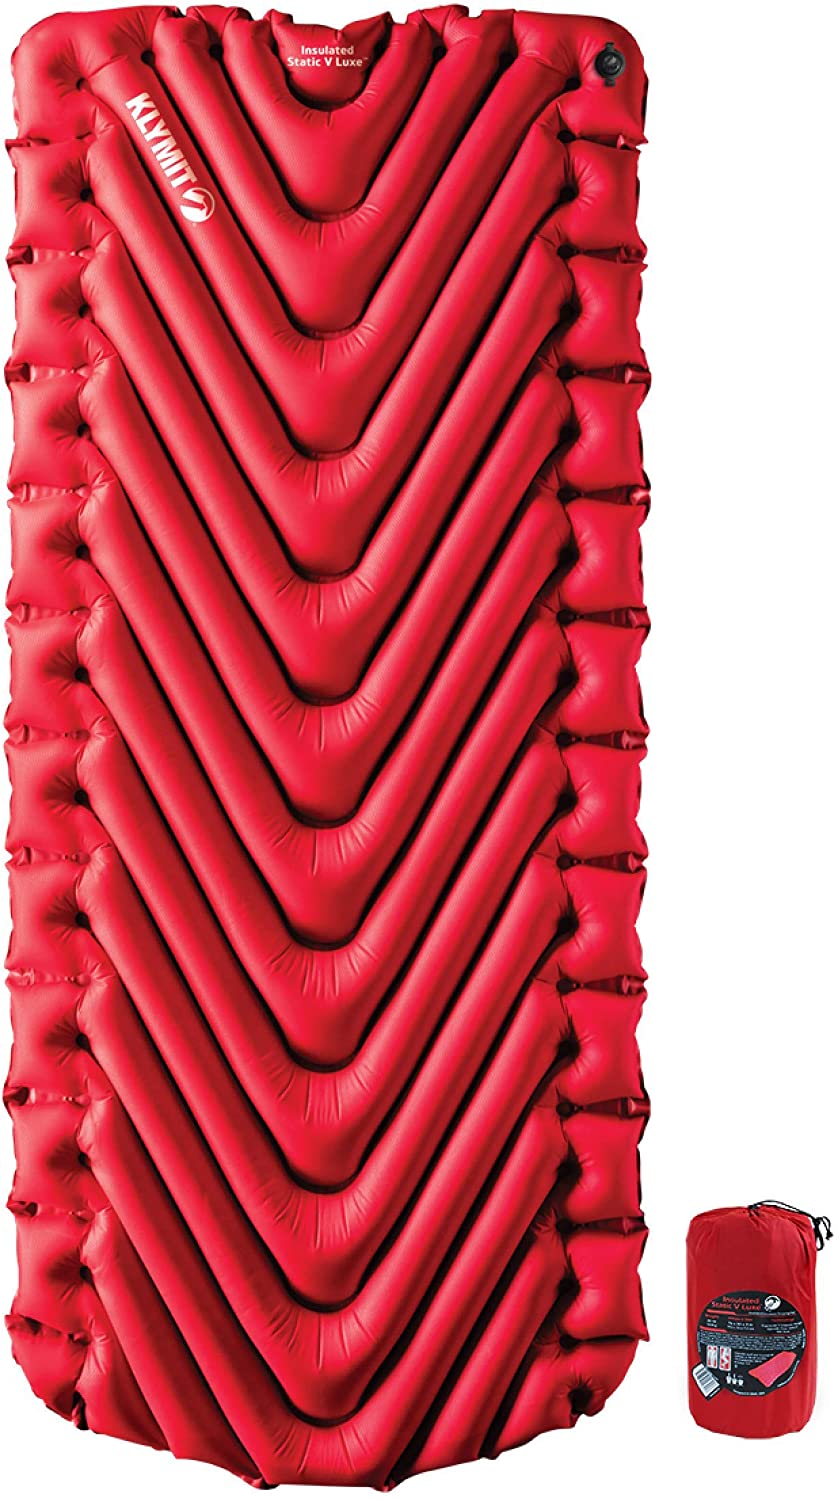 Надувной коврик KLYMIT Insulated Static V LUXE красный с доставкой по России и в Казахстан | BreadyФото 5